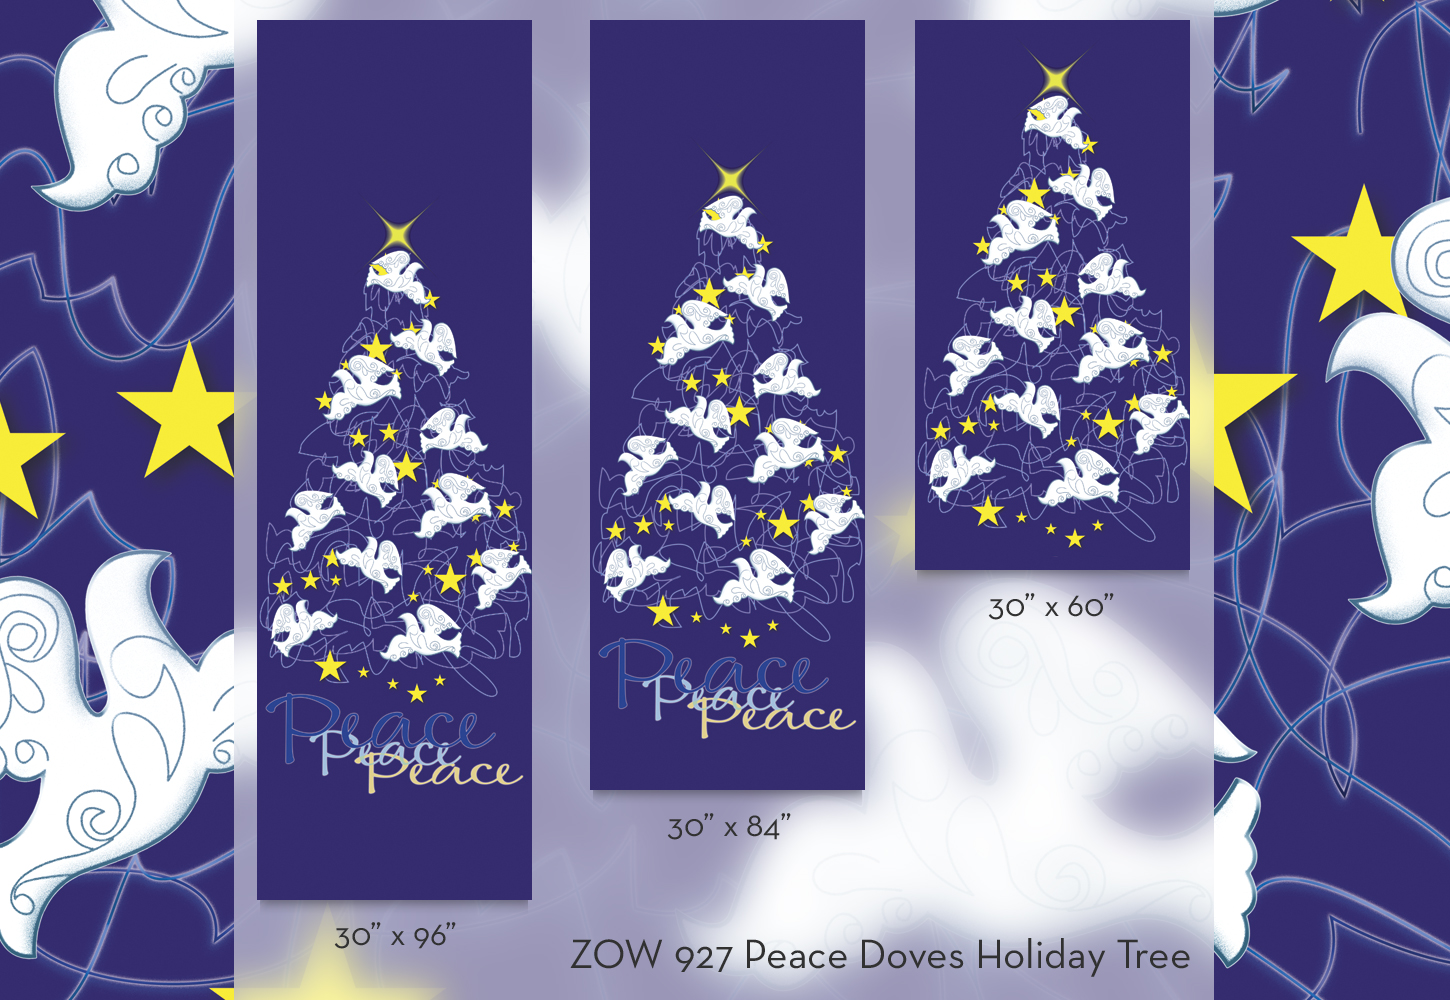 ZOW 927 Peace Doves Holiday Tree